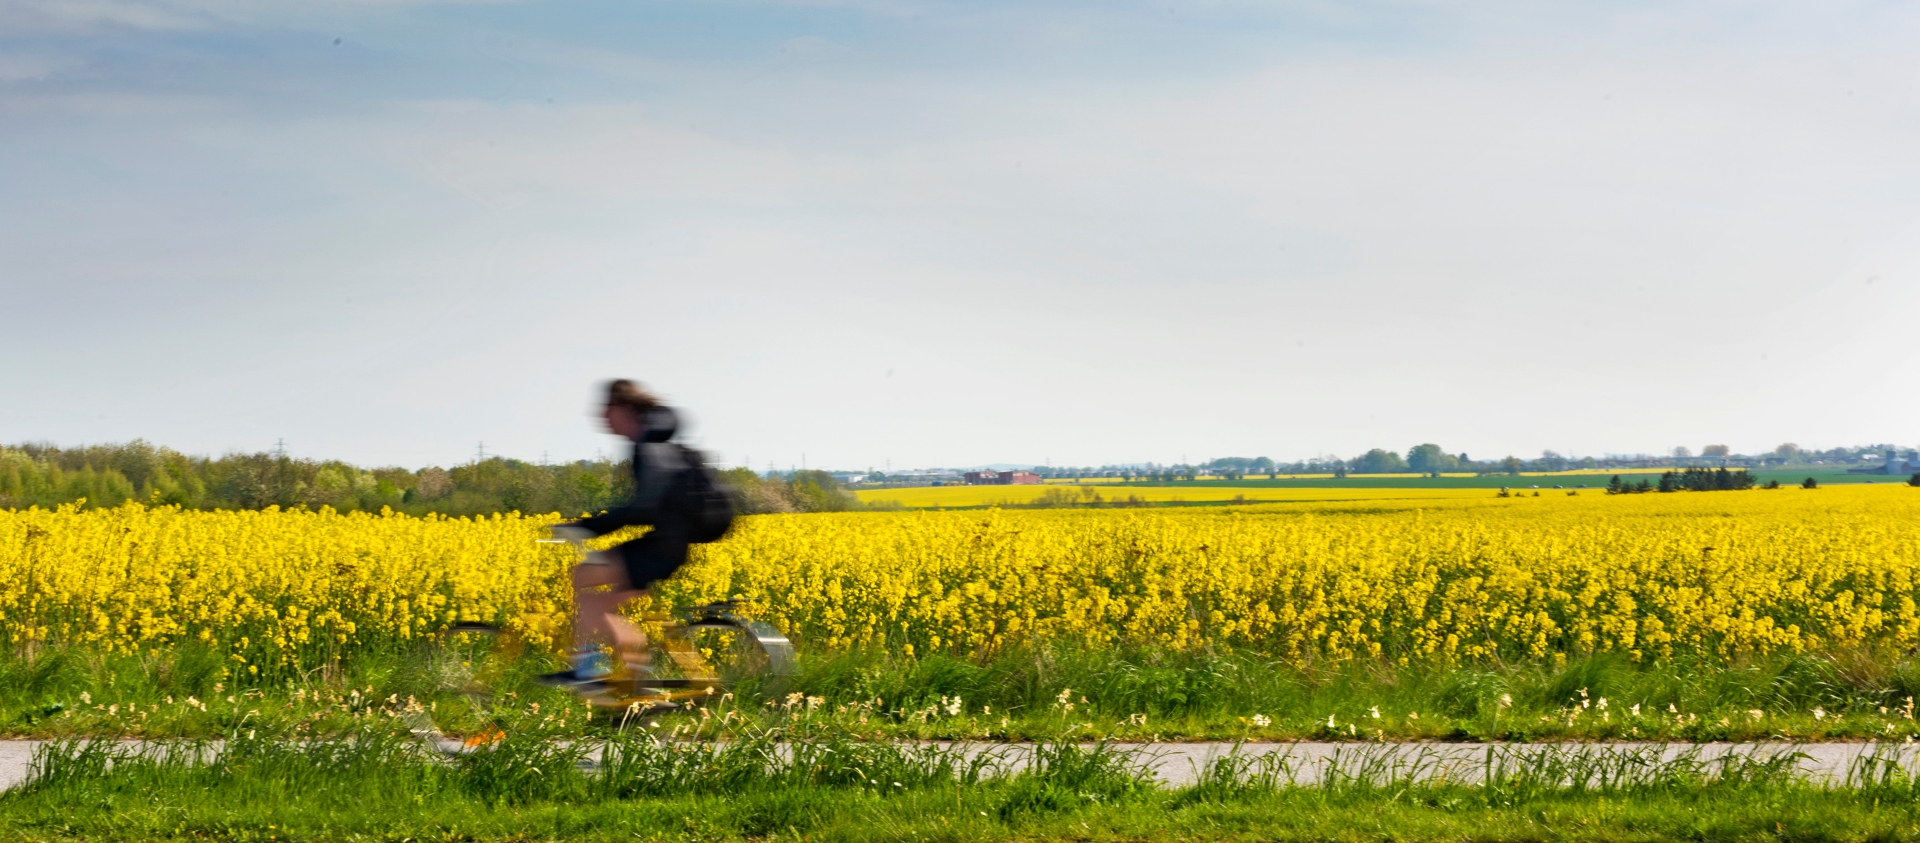 En suddig cyklist cyklar förbi i hög fart på en cykelväg. I bakgrunden syns gula rapsfält.